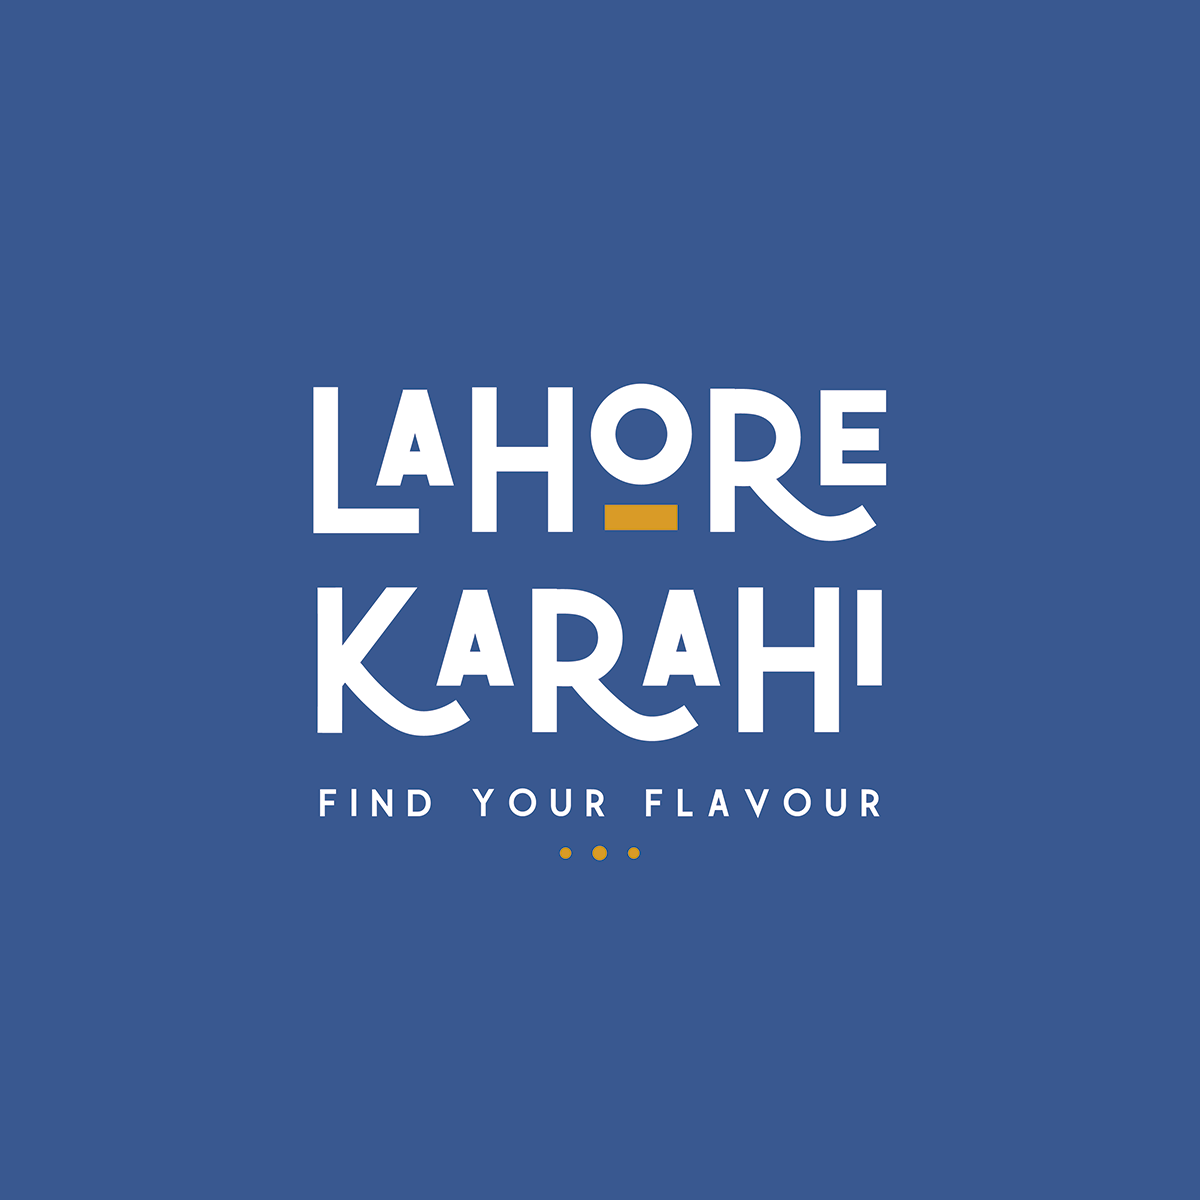 Lahore Karahi